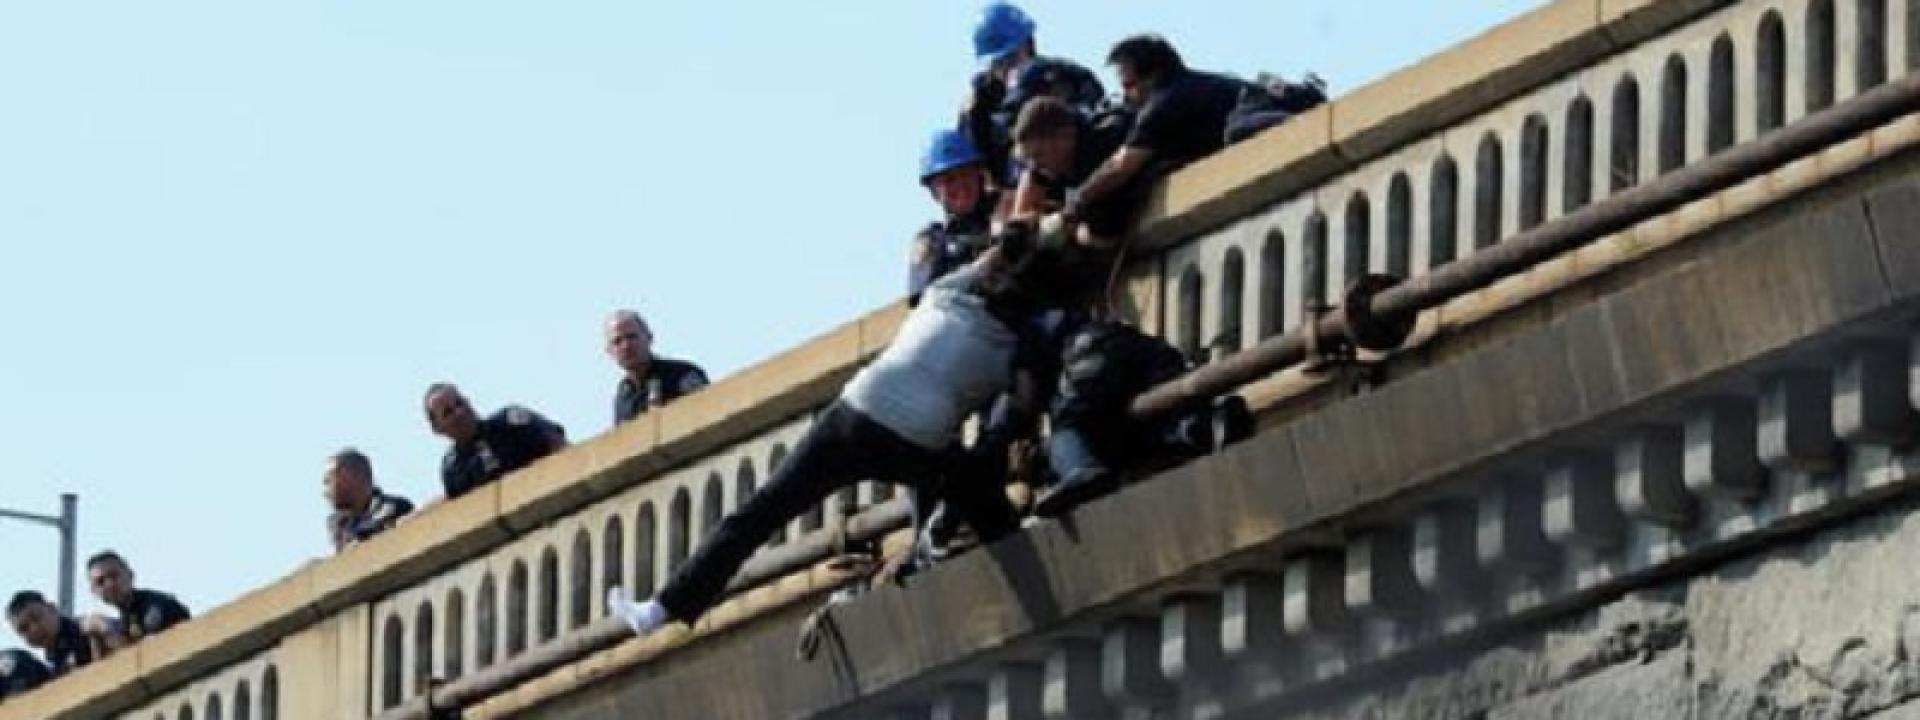 Tenta il suicidio impiccandosi in un dirupo: salvato dai carabinieri